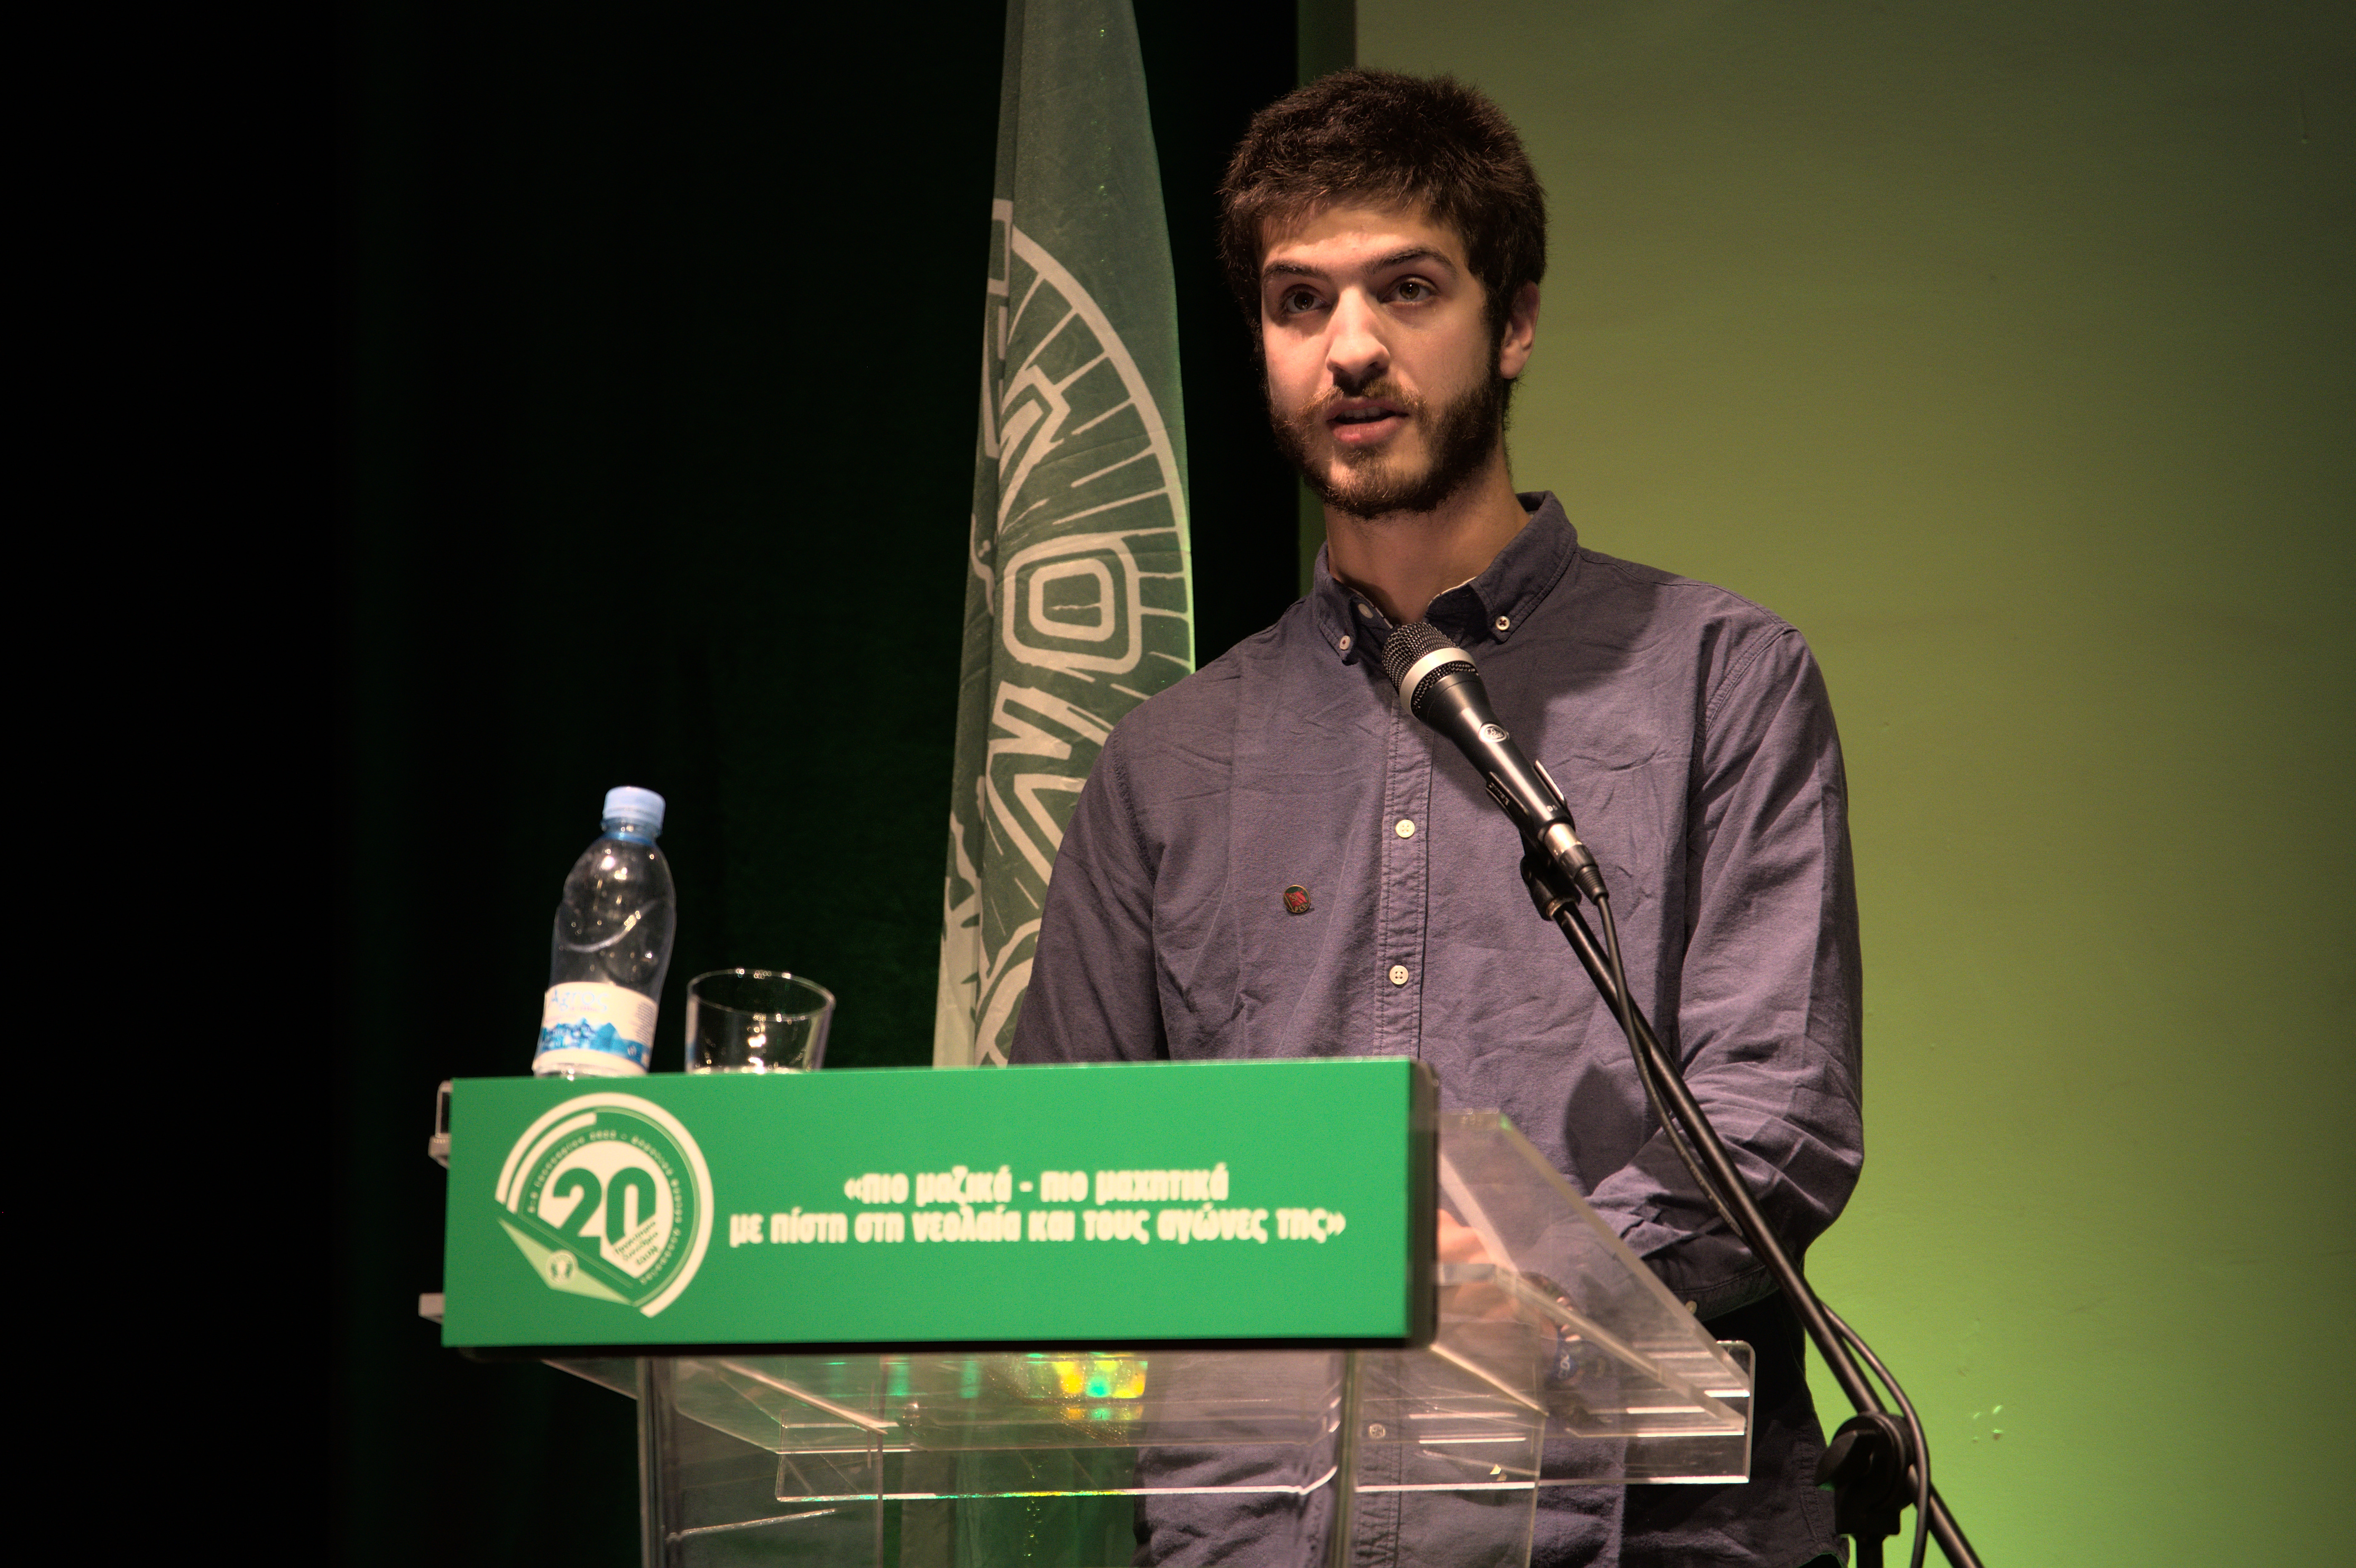 Χαιρετισμός Πορτογαλικής Κομμουνιστικής Νεολαίας (JCP) στο 20ο Παγκύπριο Συνέδριο ΕΔΟΝ